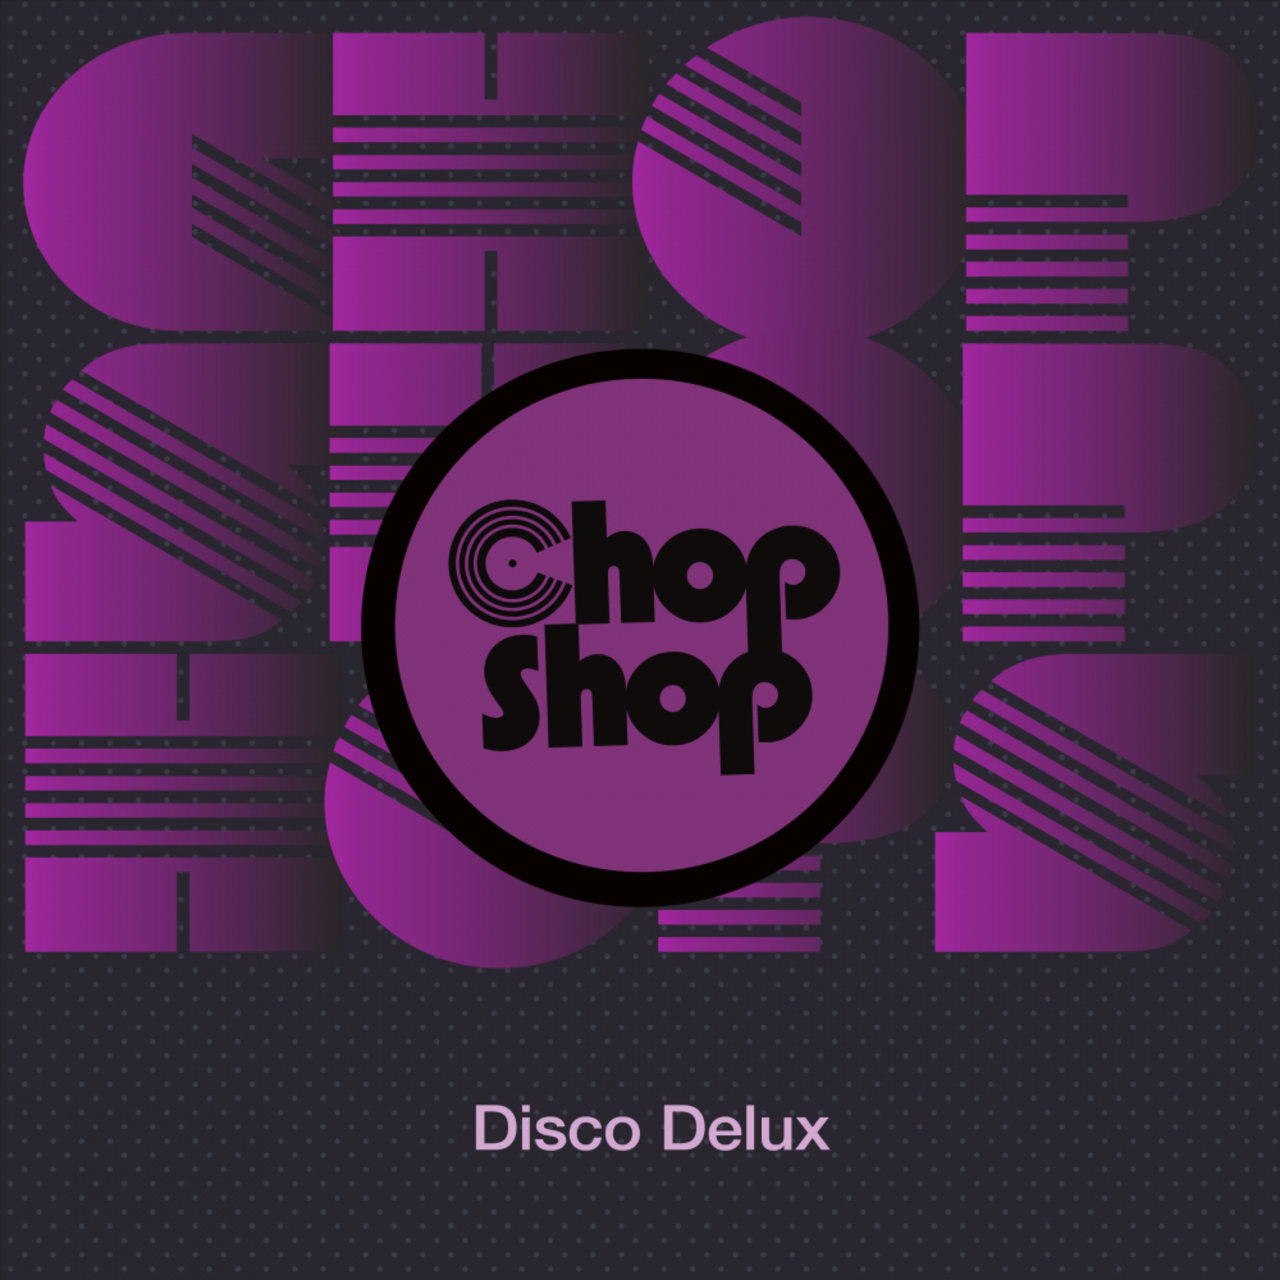 VA - Disco Delux / Chopshop Music